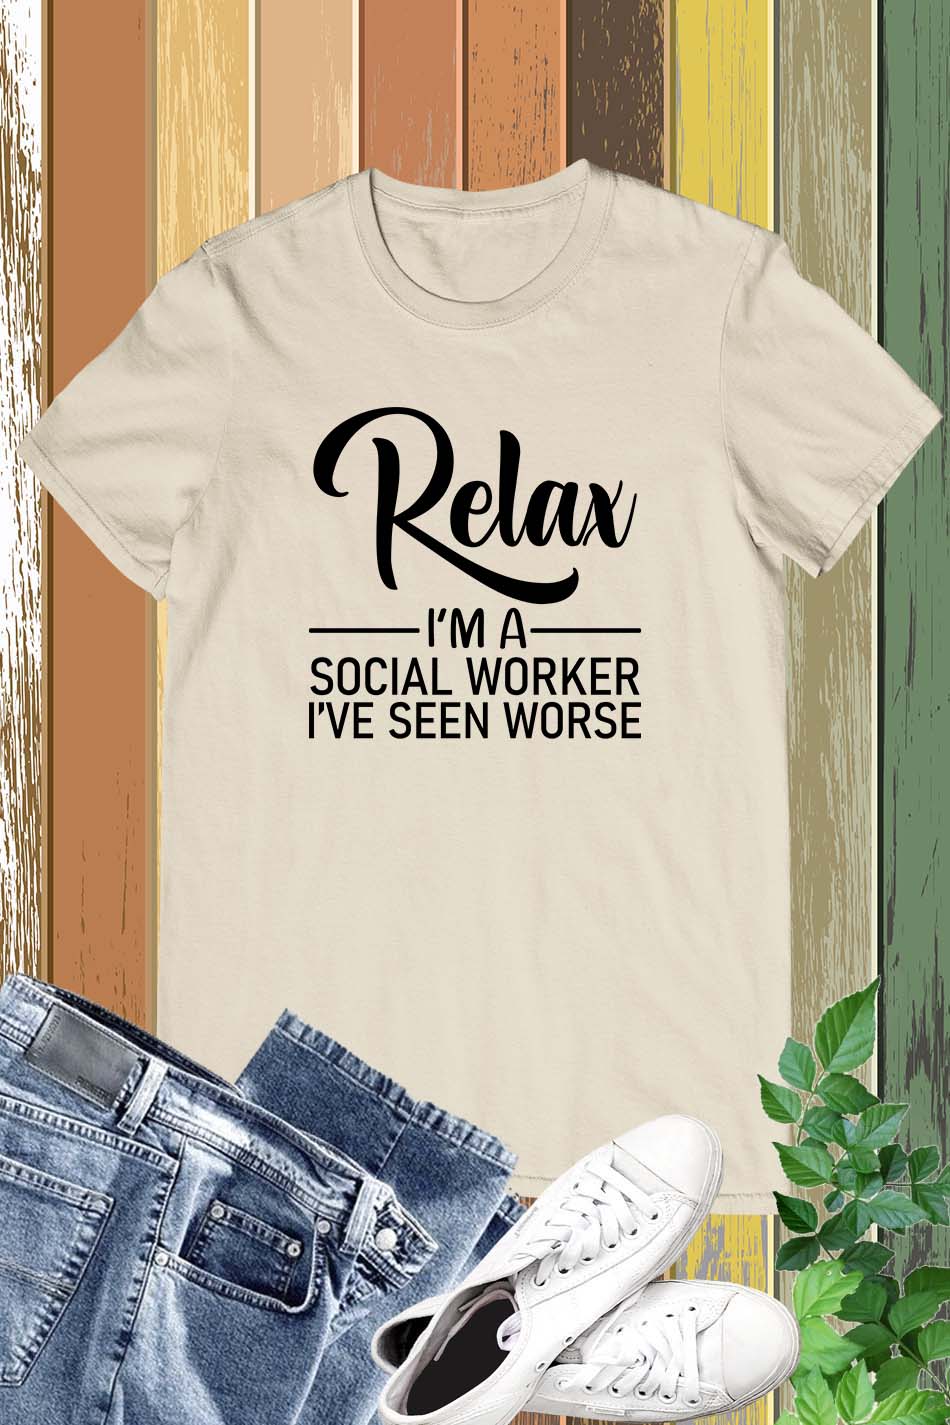 Social Work Tee Shirts Relax Motivation T-shirt